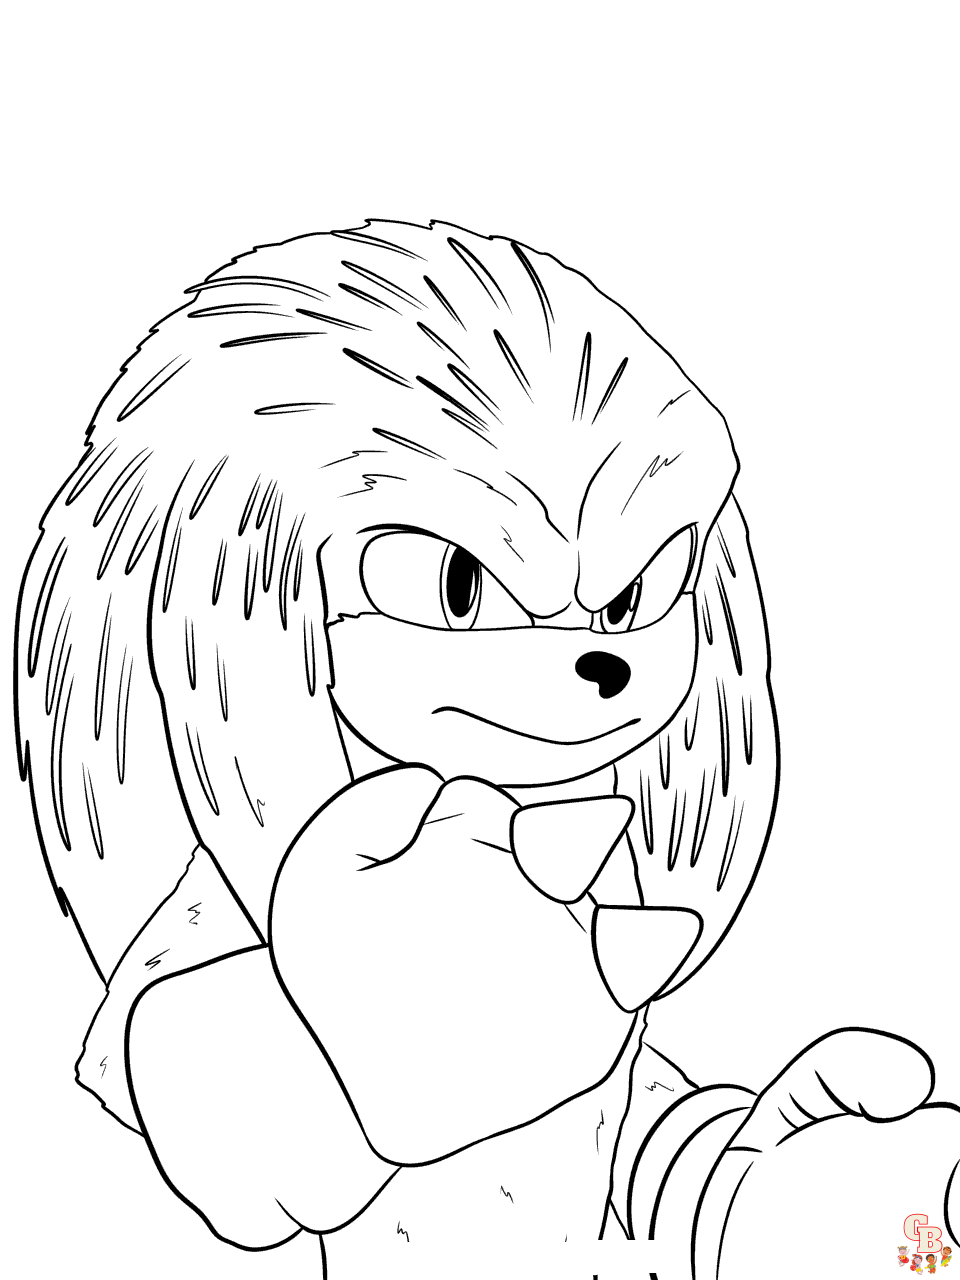 Sonic the Hedgehog 2 ausmalbilder zum ausdrucken